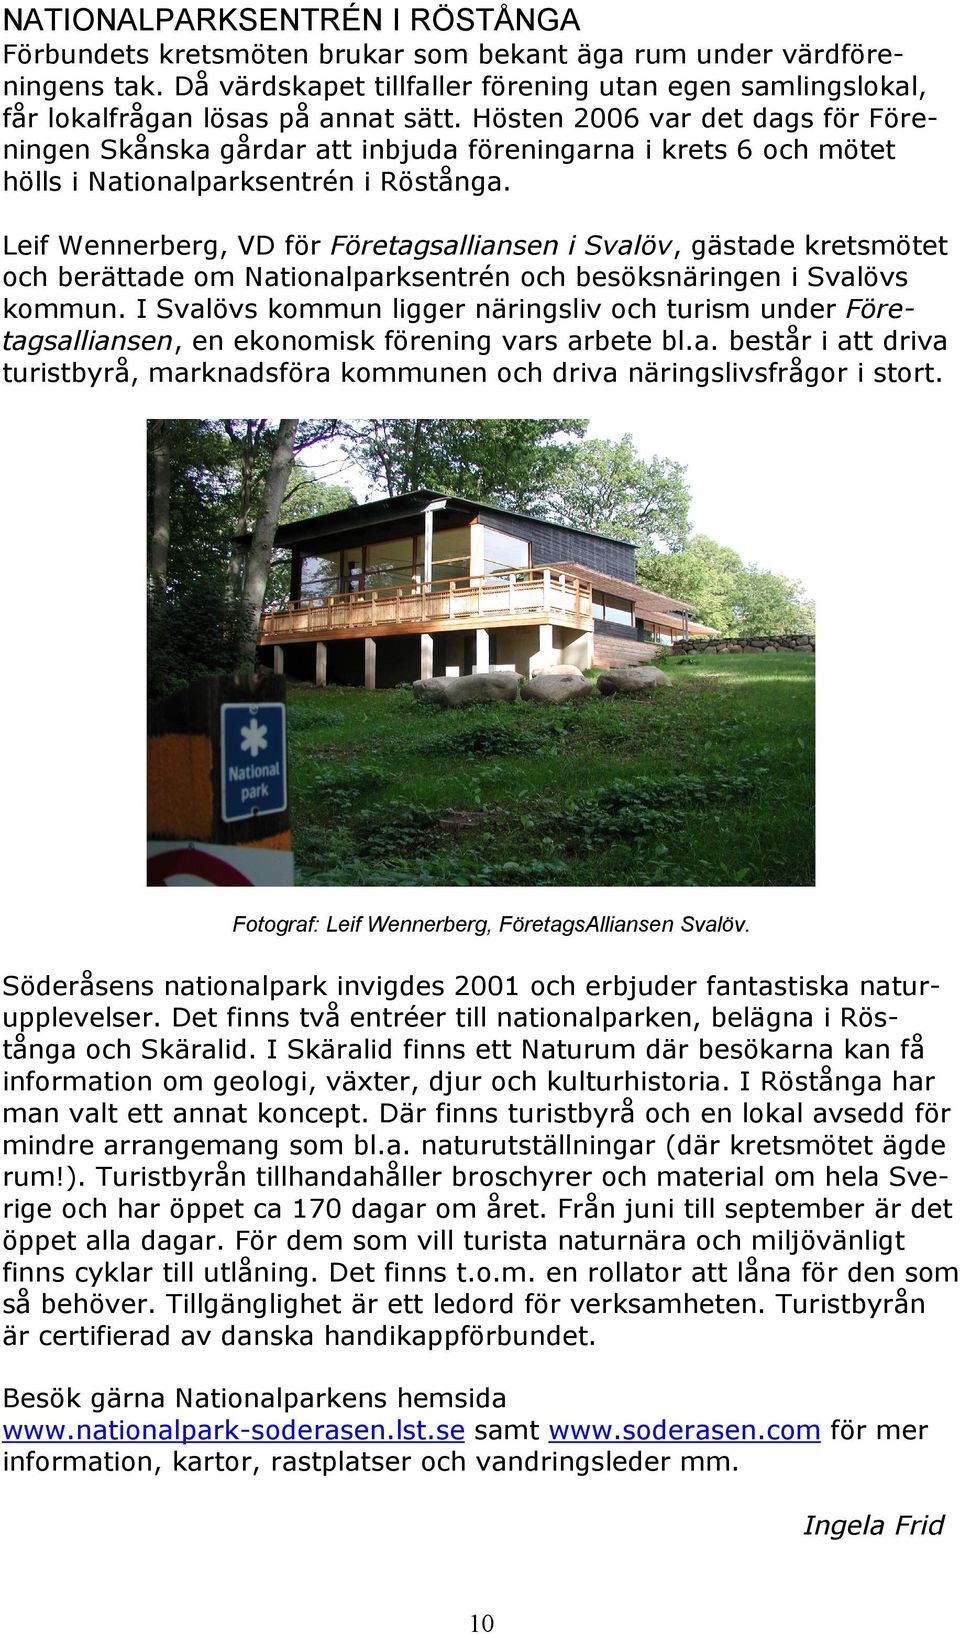 Hösten 2006 var det dags för Föreningen Skånska gårdar att inbjuda föreningarna i krets 6 och mötet hölls i Nationalparksentrén i Röstånga.